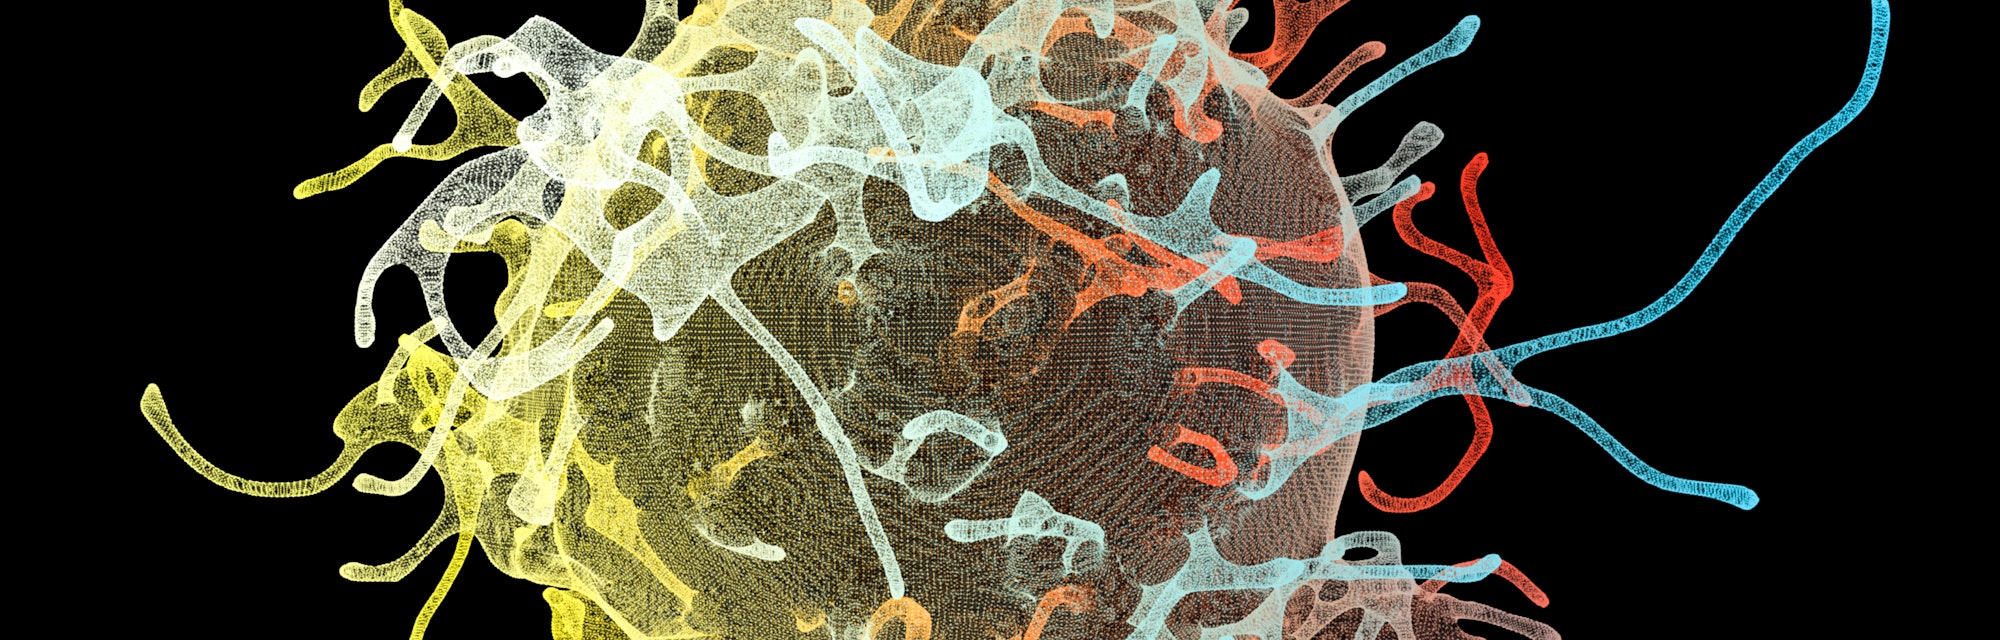 Cancer cells, computer illustration.